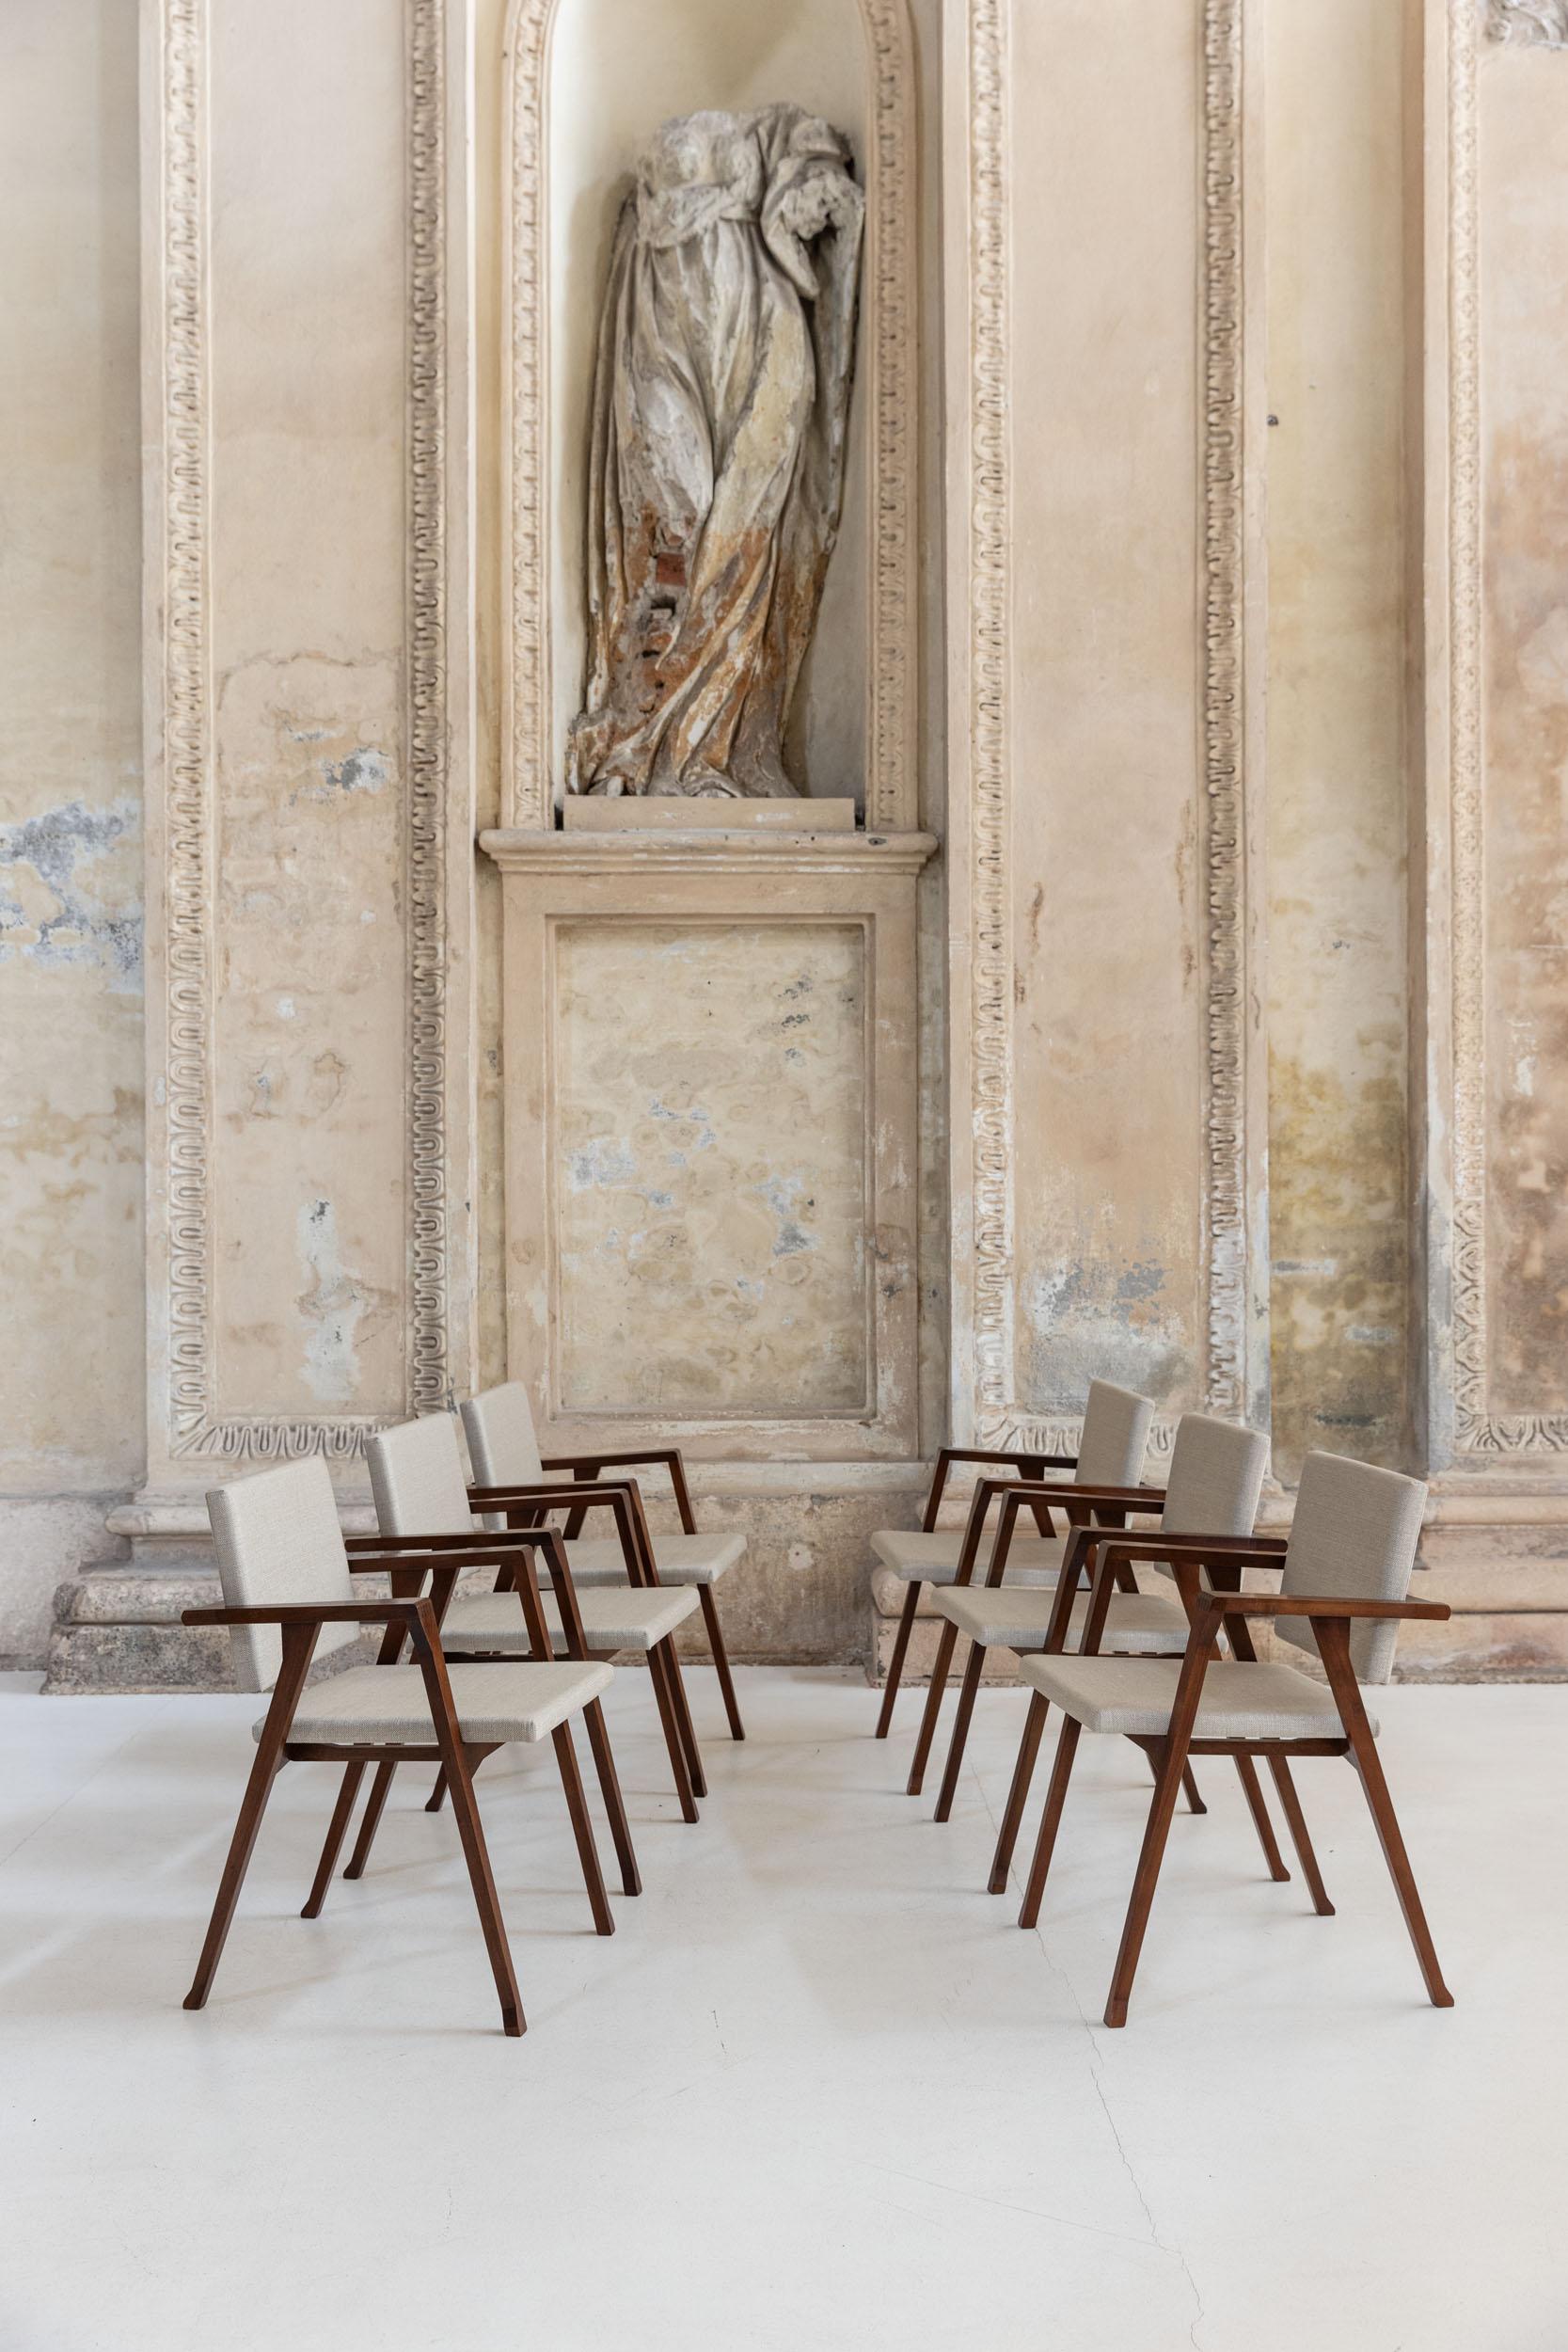 Ensemble de six chaises Luisa avec une structure en bois recouverte de tissu beige, conçues par Franco Albini et fabriquées par Poggi Pavia, c.C. 1950. 
Luisa chair a remporté le Compasso d'oro ADI en 1955.
Dossard : Franco Albini. Metodo e Poesia,